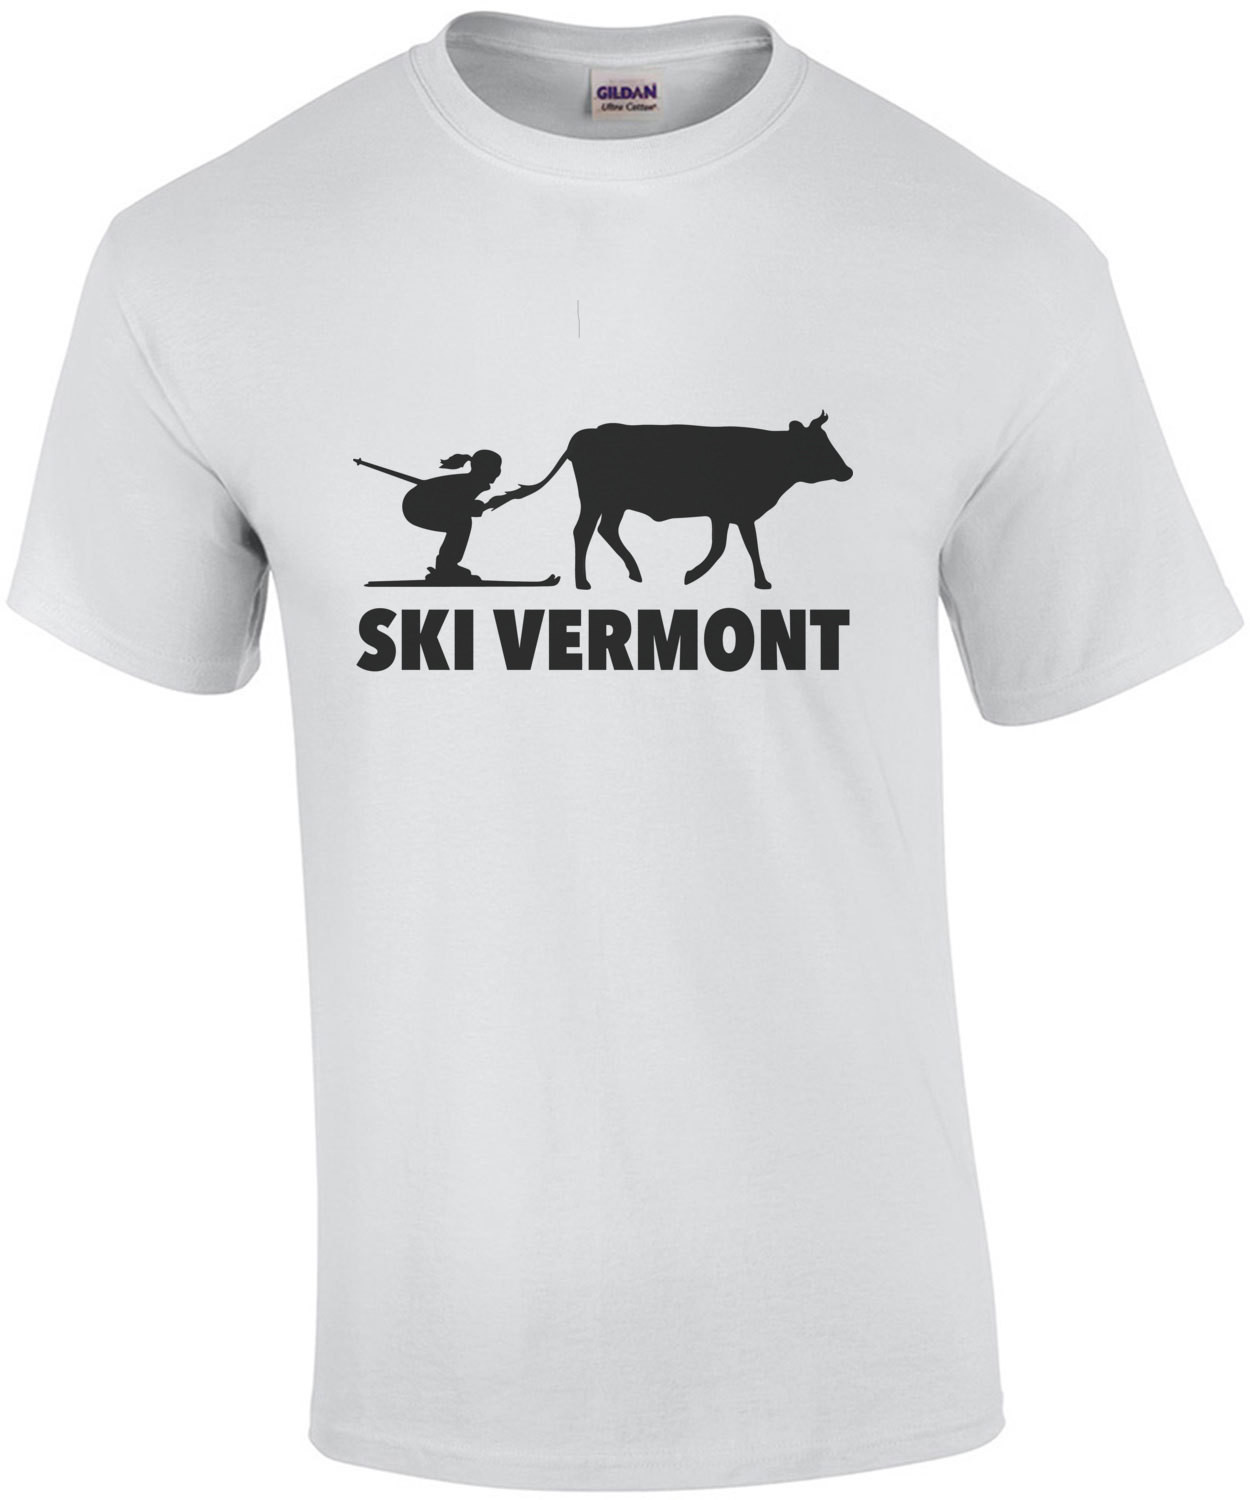 Ski Vermont T-Shirt